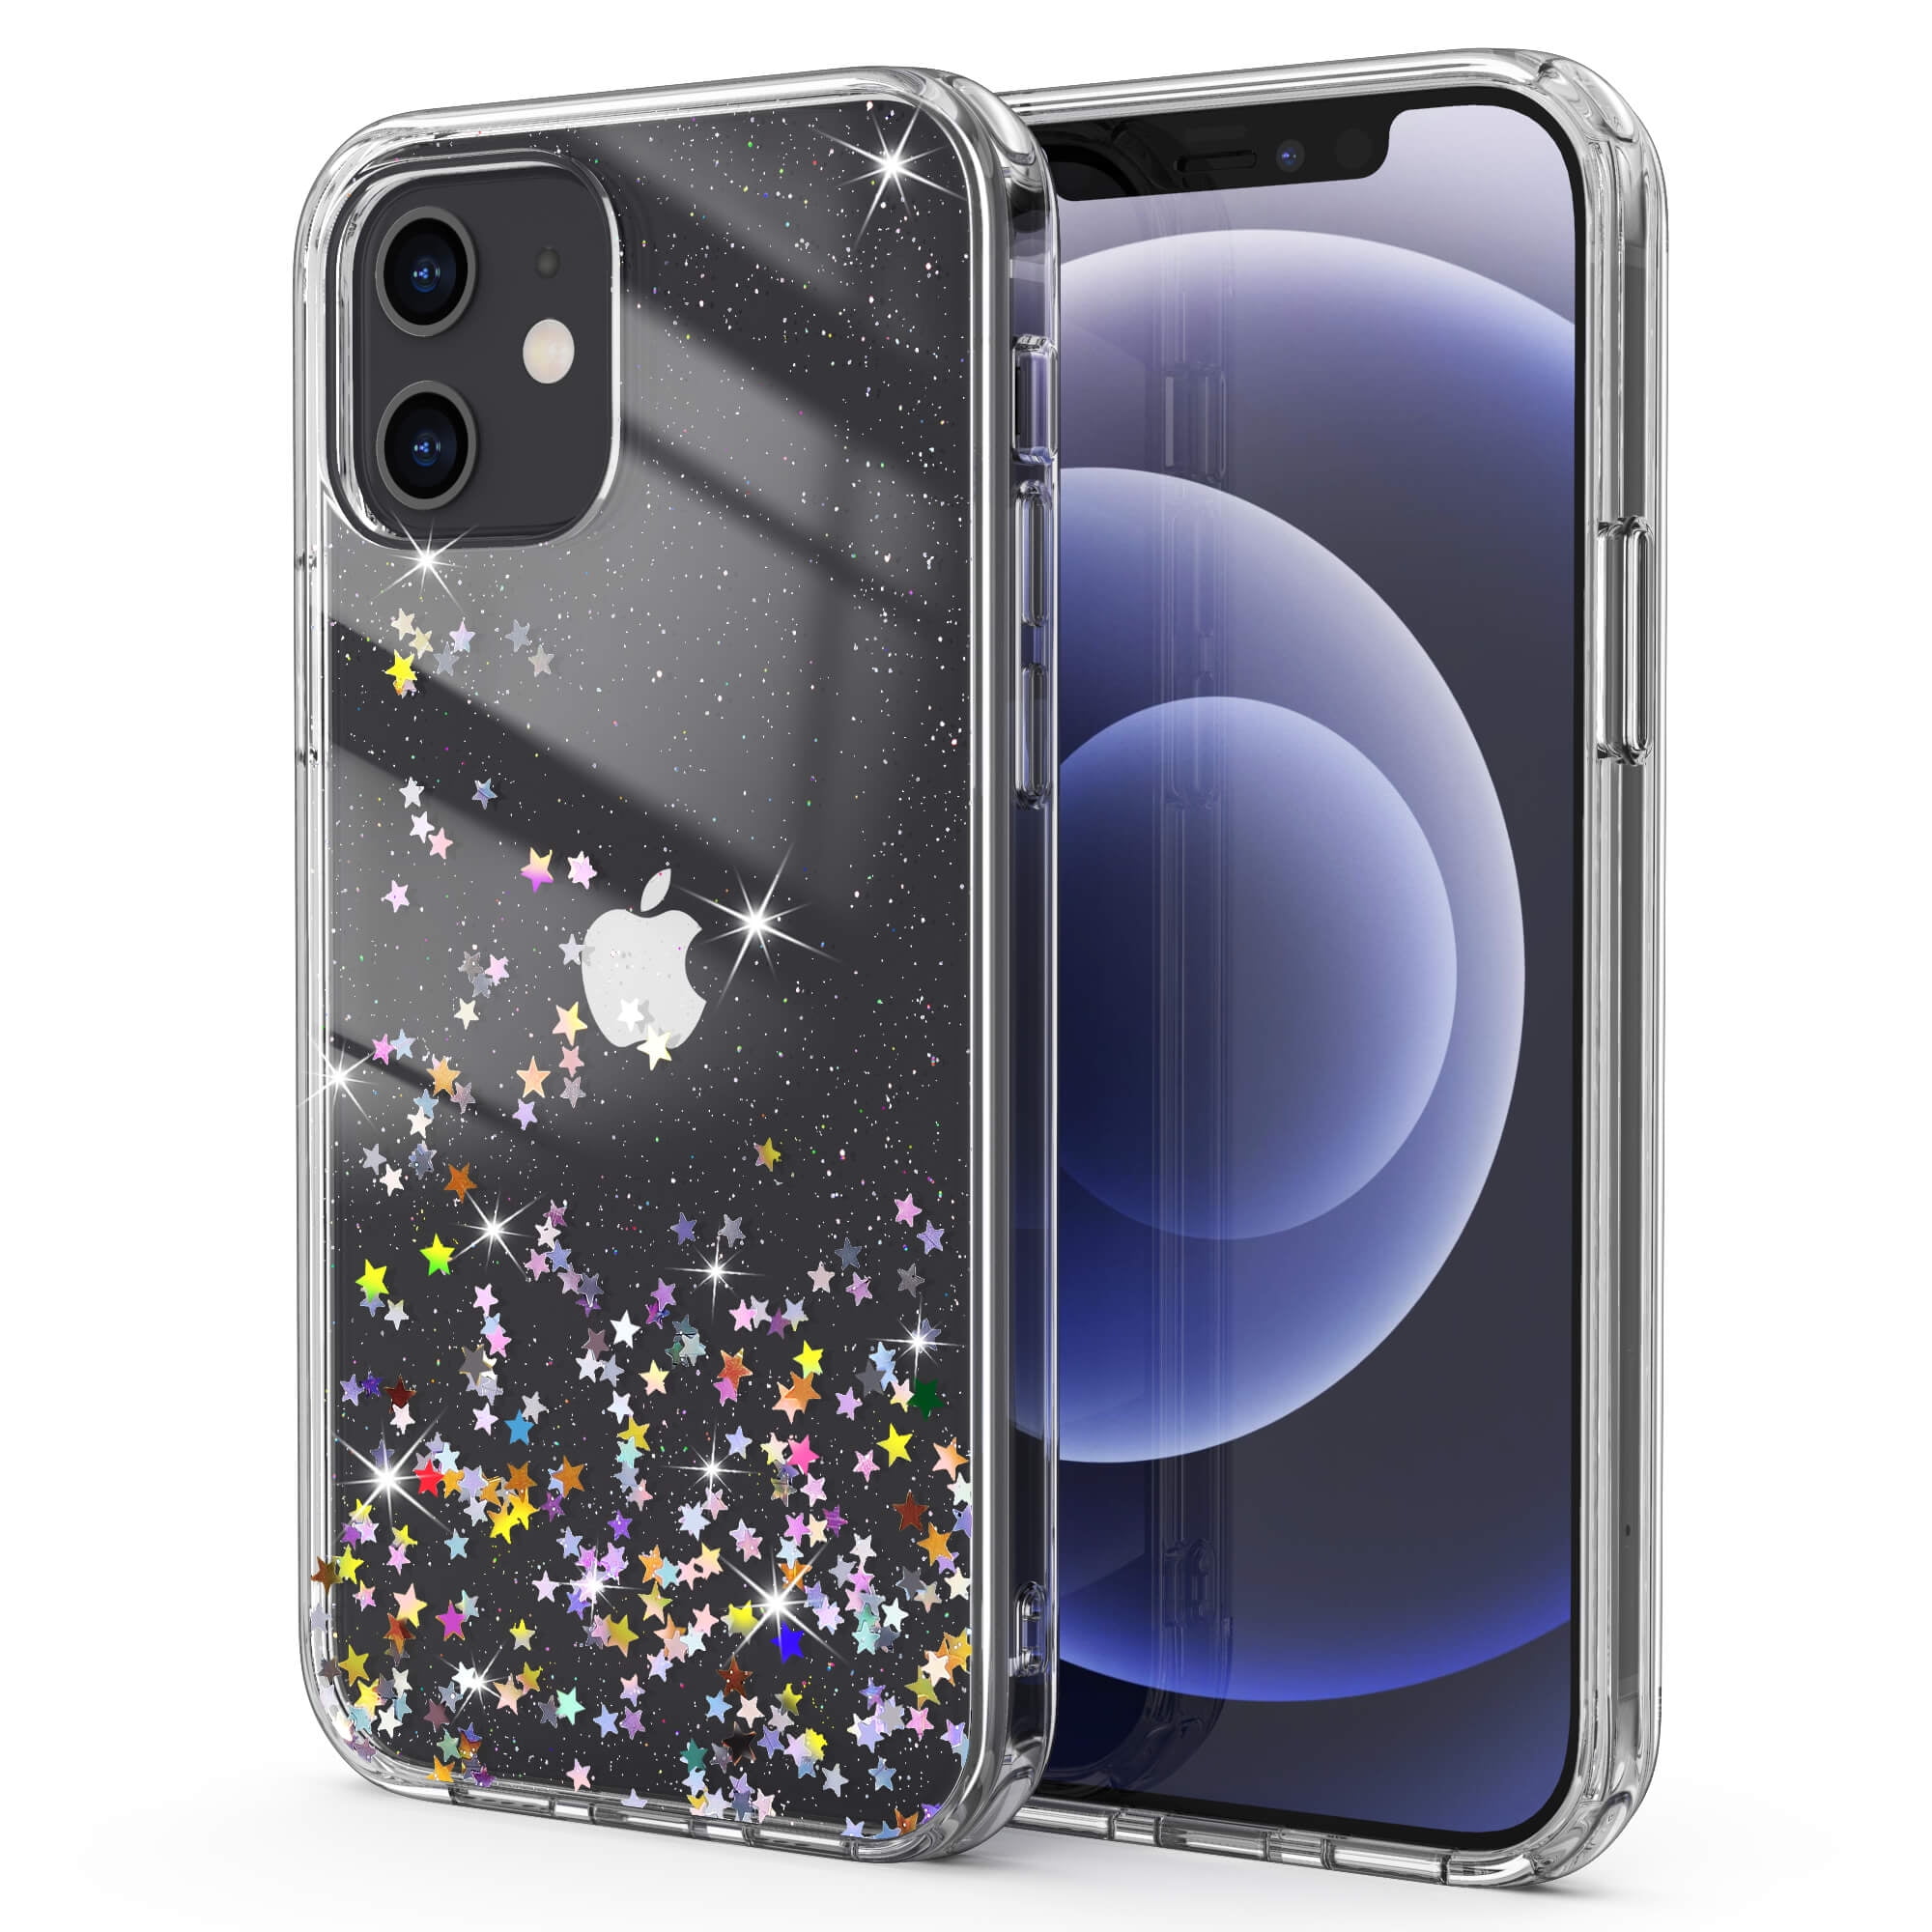 Ulak Iphone 12 Case Iphone 12 Pro Case Anti Scratch Shockproof Bumper Slim Phone Case For Apple Iphone 12 12 Pro Stars Glitter Walmart Com